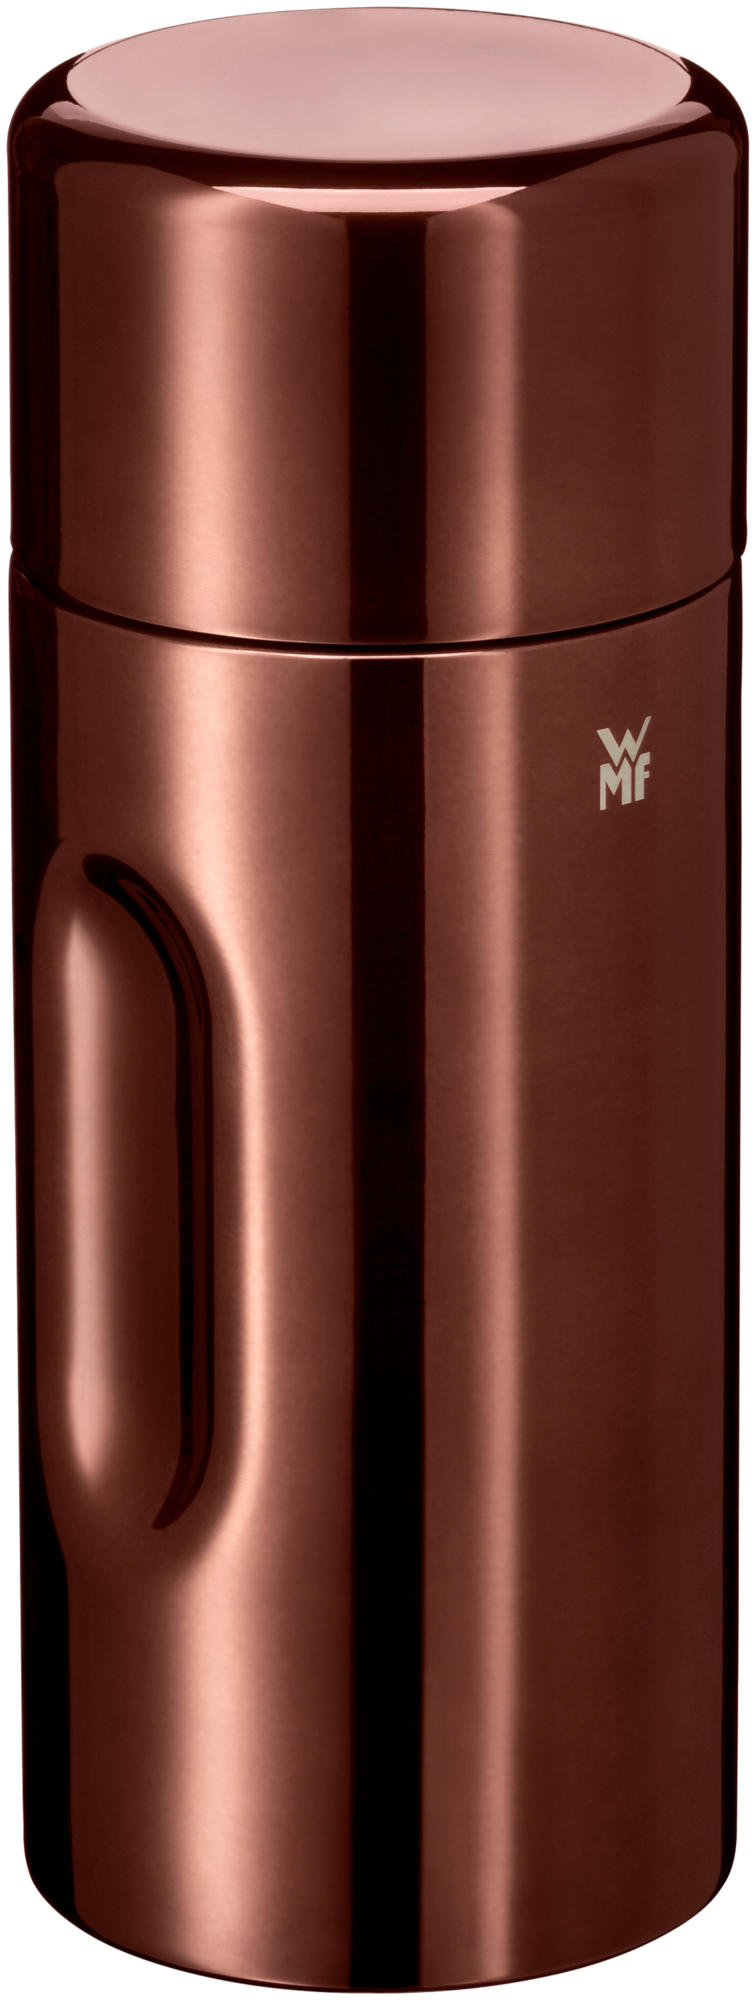 MOTION Vacuum flask 0.5l vintage copper